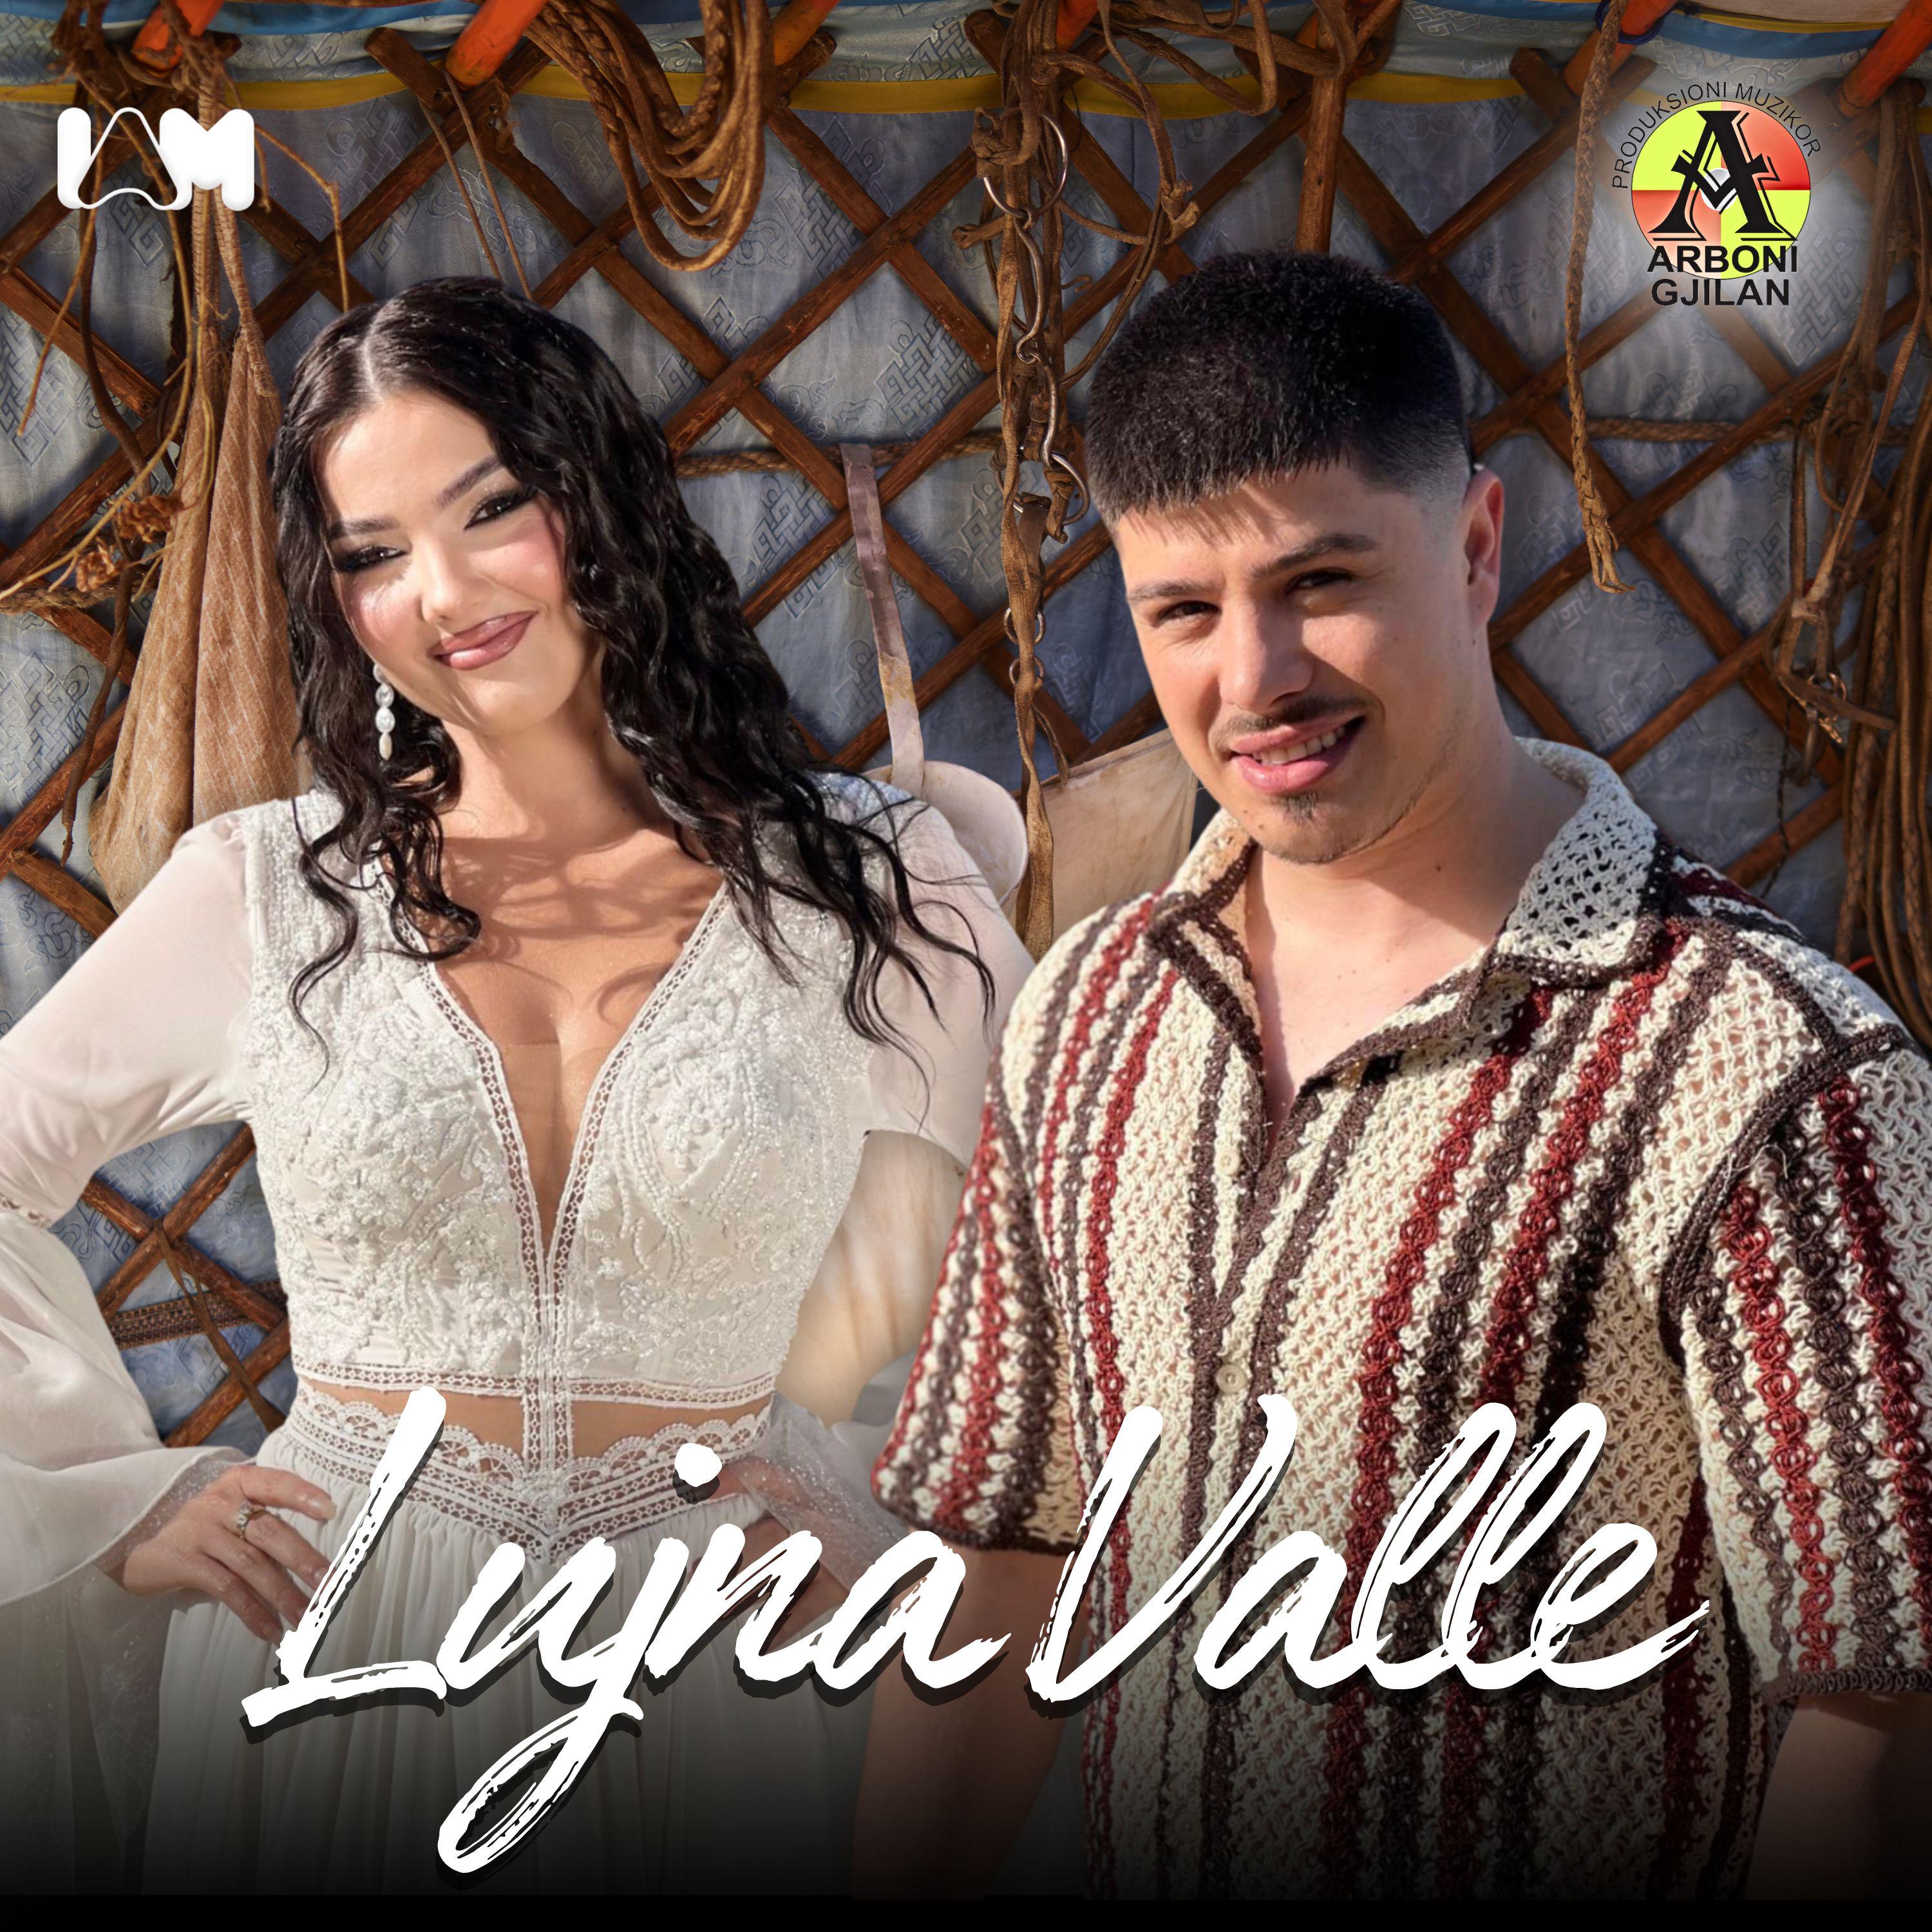 Постер альбома Lujna Valle